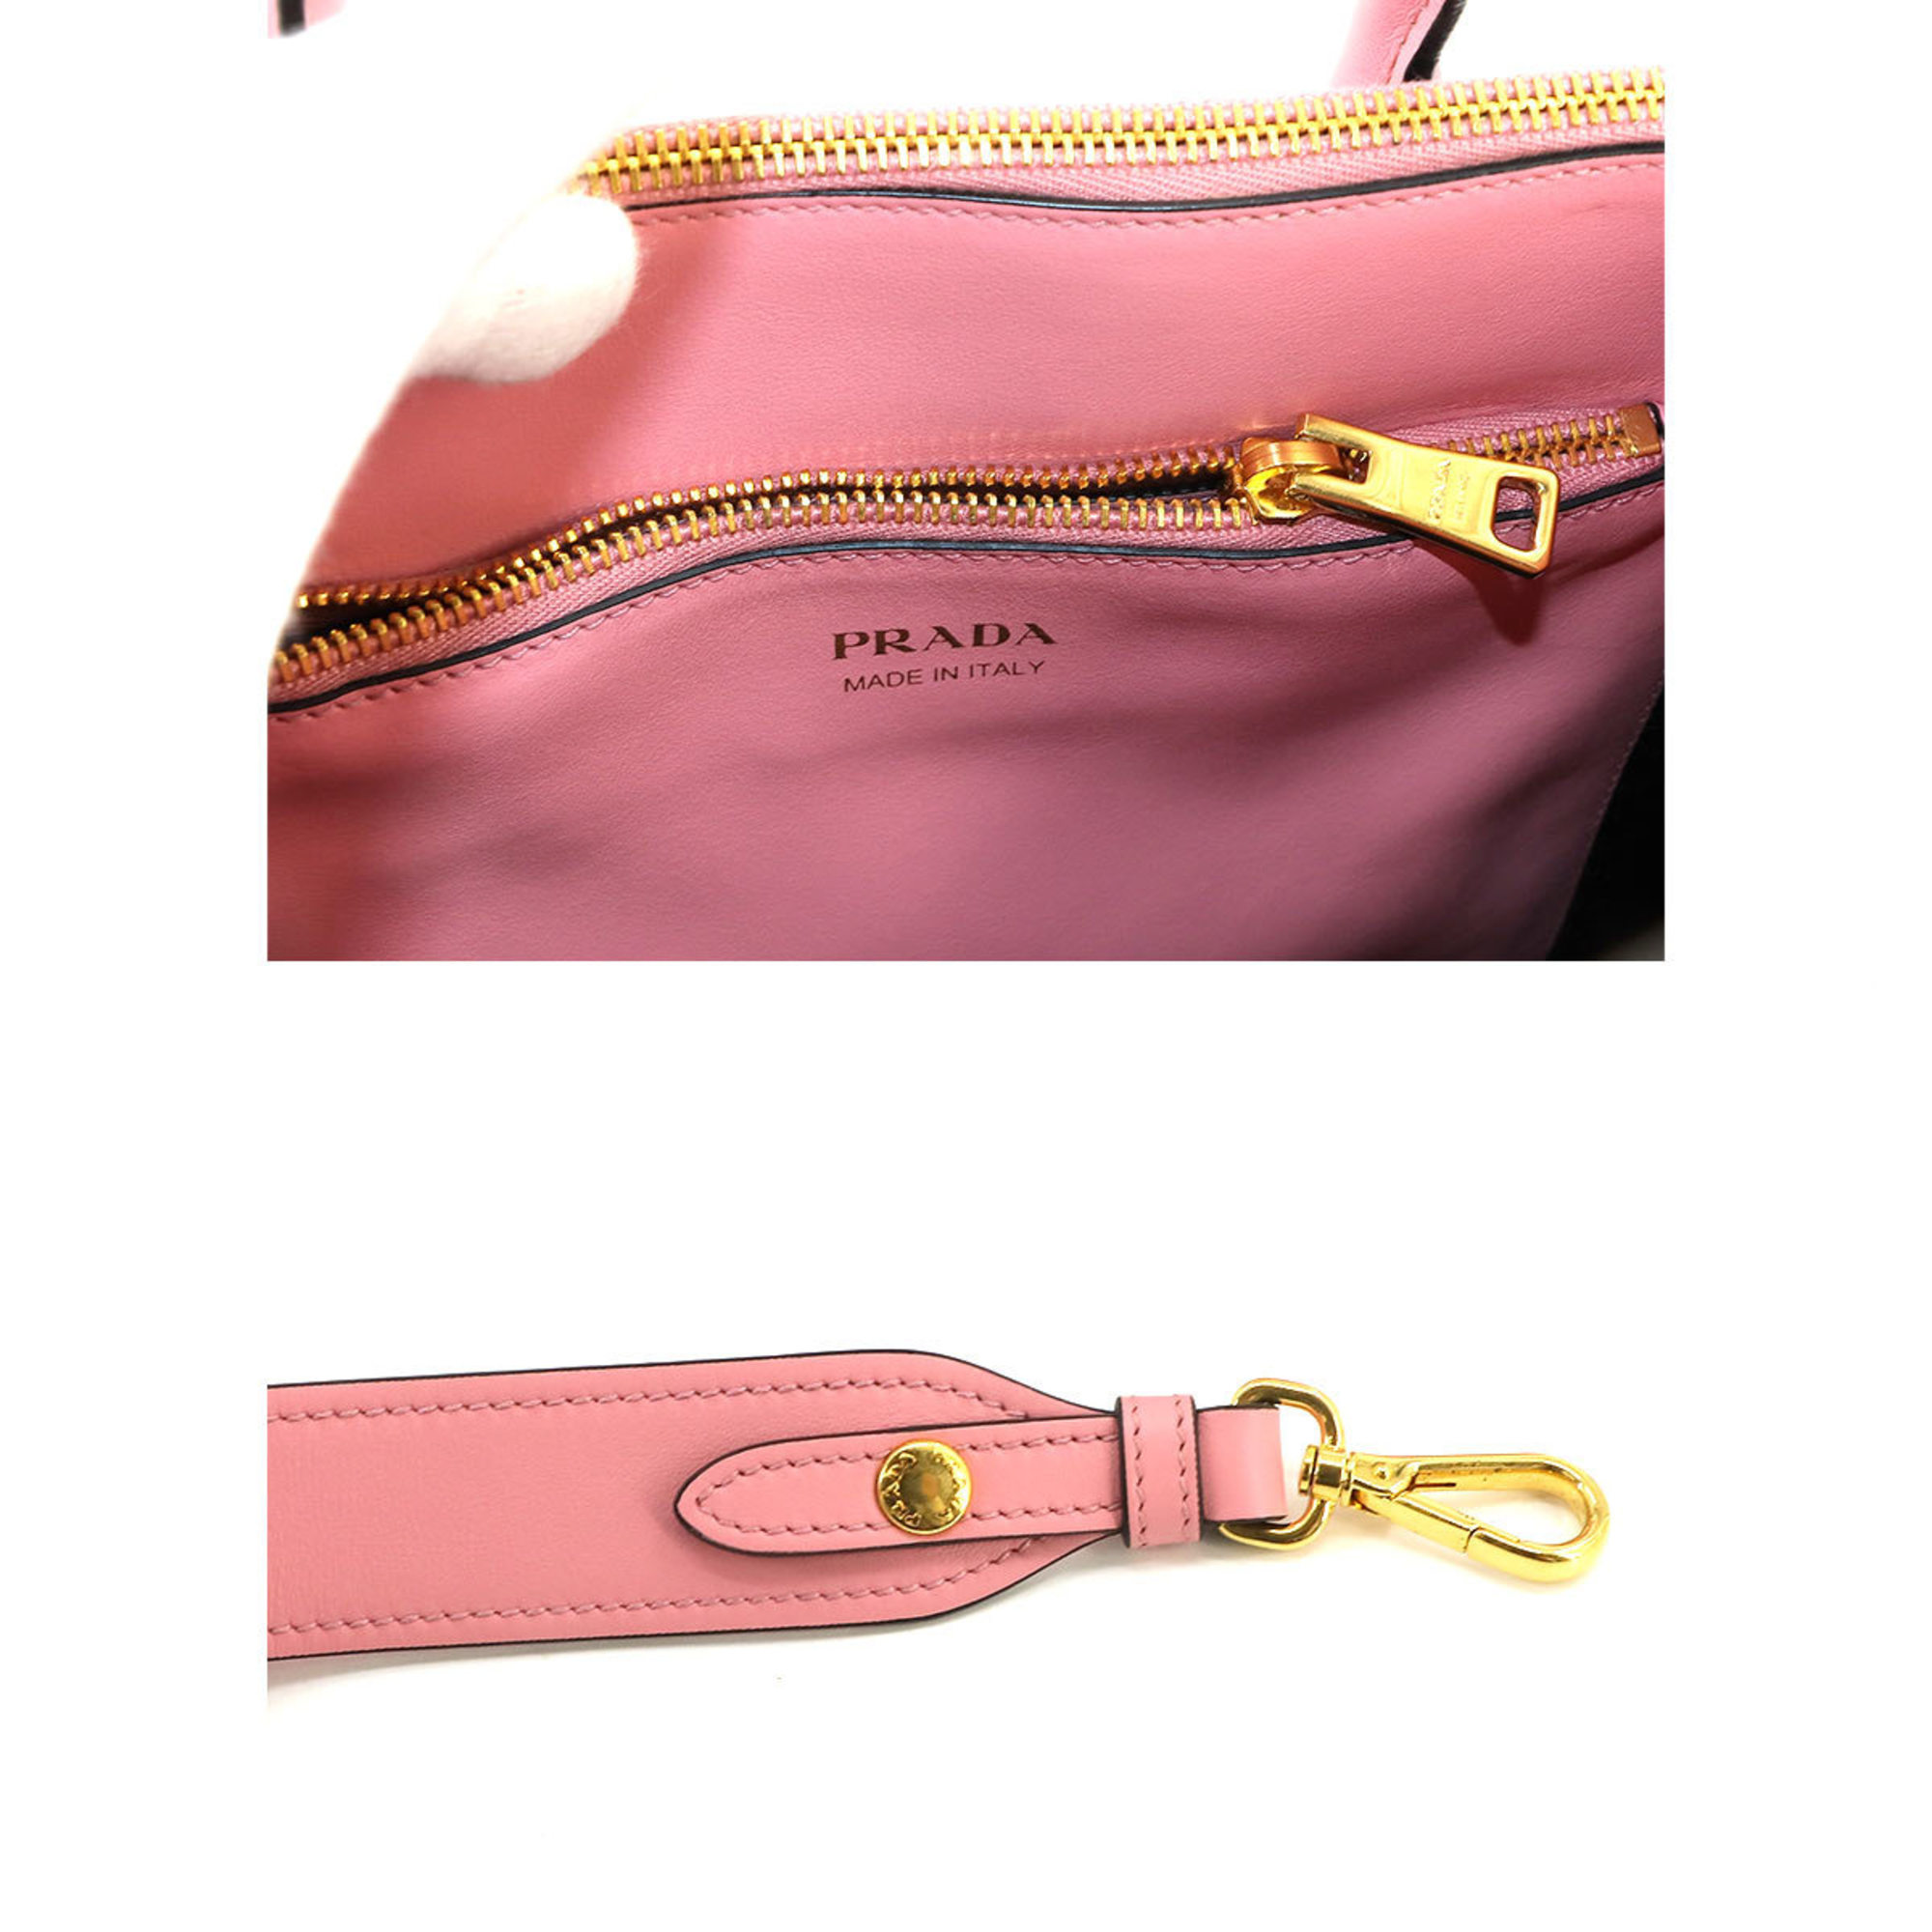 PRADA Paradigm 2way hand shoulder bag in Saffiano leather, Petalo pink 1BA103 Bag